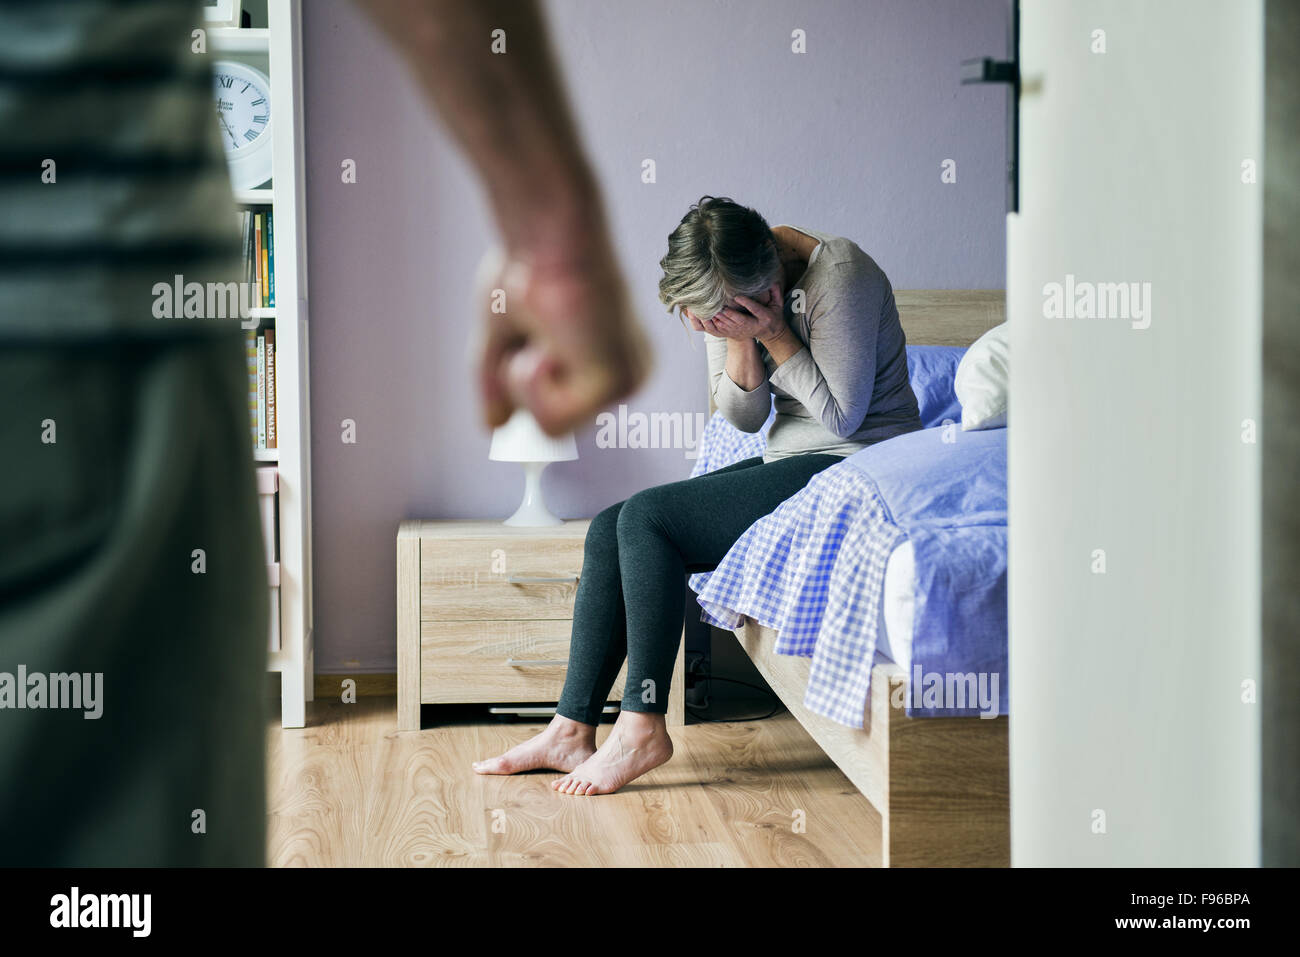 Mujer madura, sentada en la cama tiene miedo de un hombre. La mujer es víctima de violencia doméstica y abuso. Foto de stock